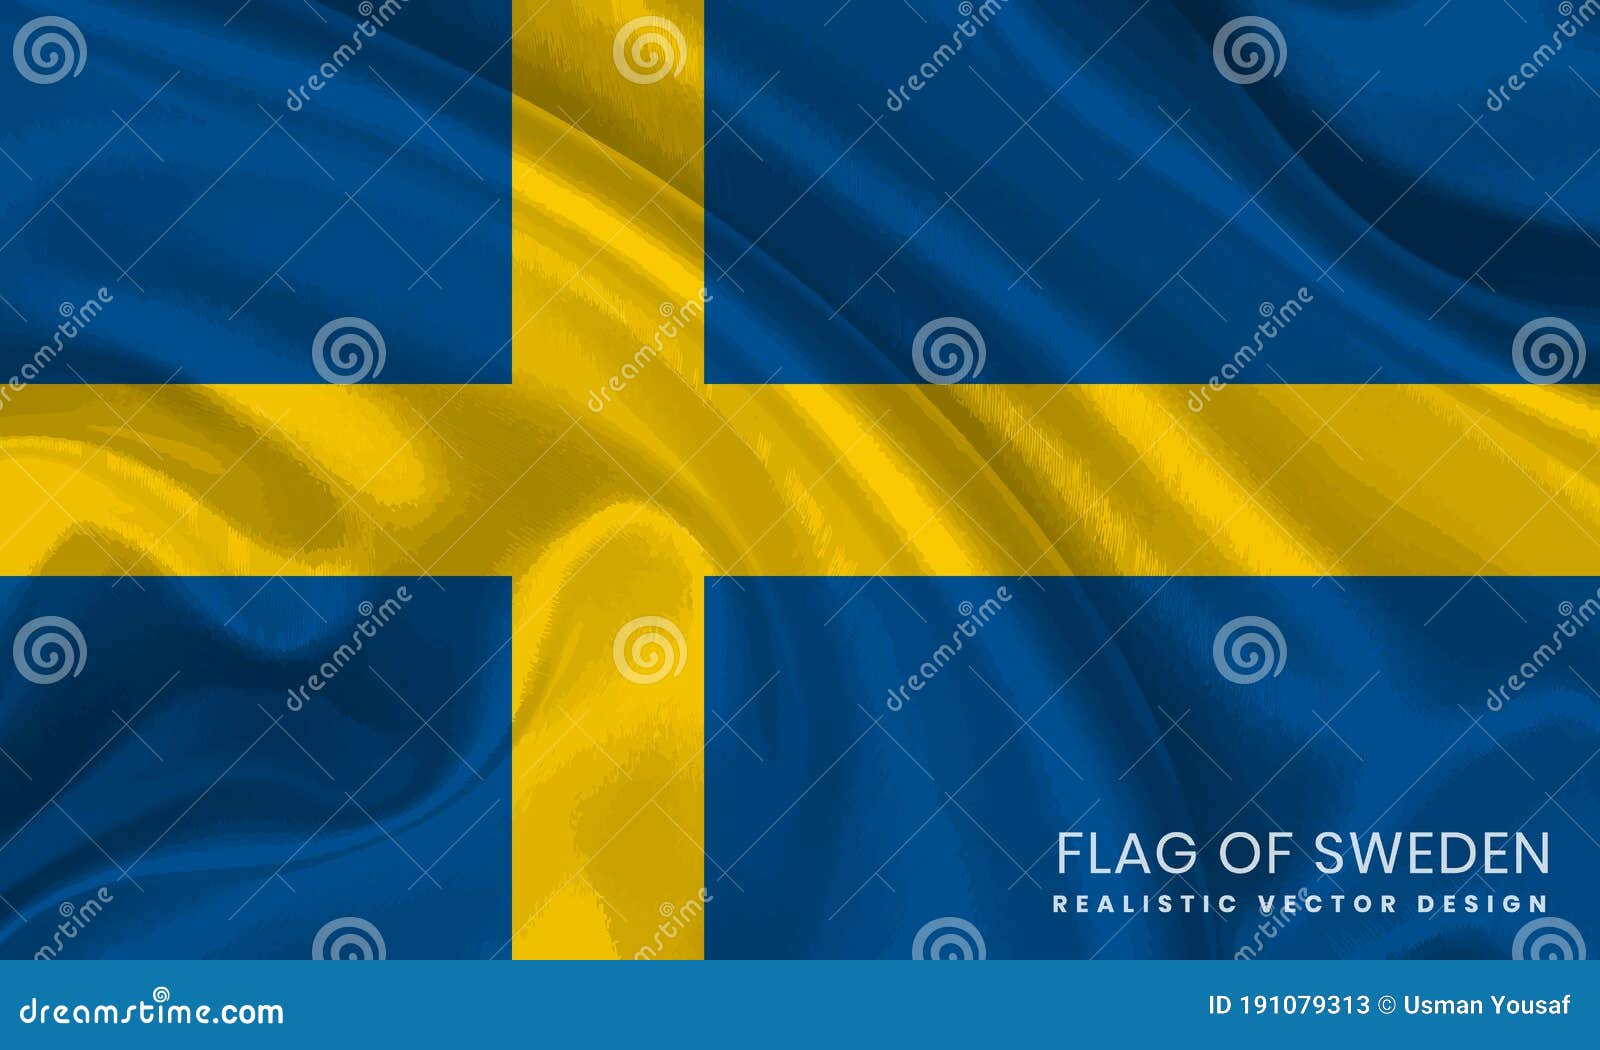 超过 60 张关于“国旗 瑞典”和“瑞典”的免费图片 - Pixabay